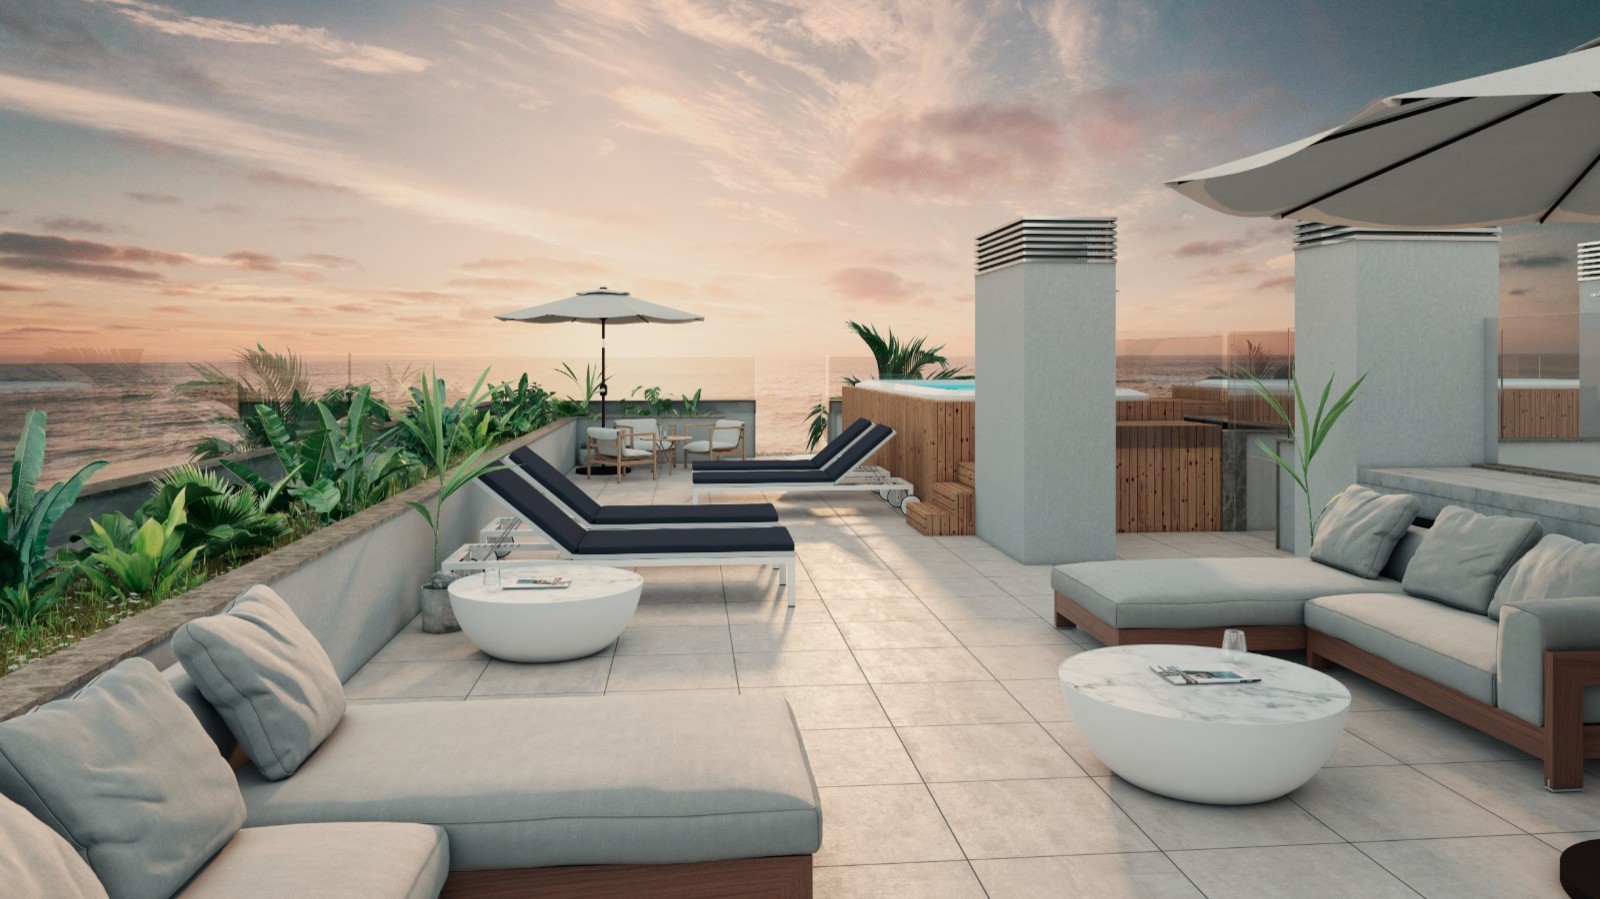 Apartamento T3 com vista de mar, terraço e jacuzzi, para venda, Gaia, Portugal_250232